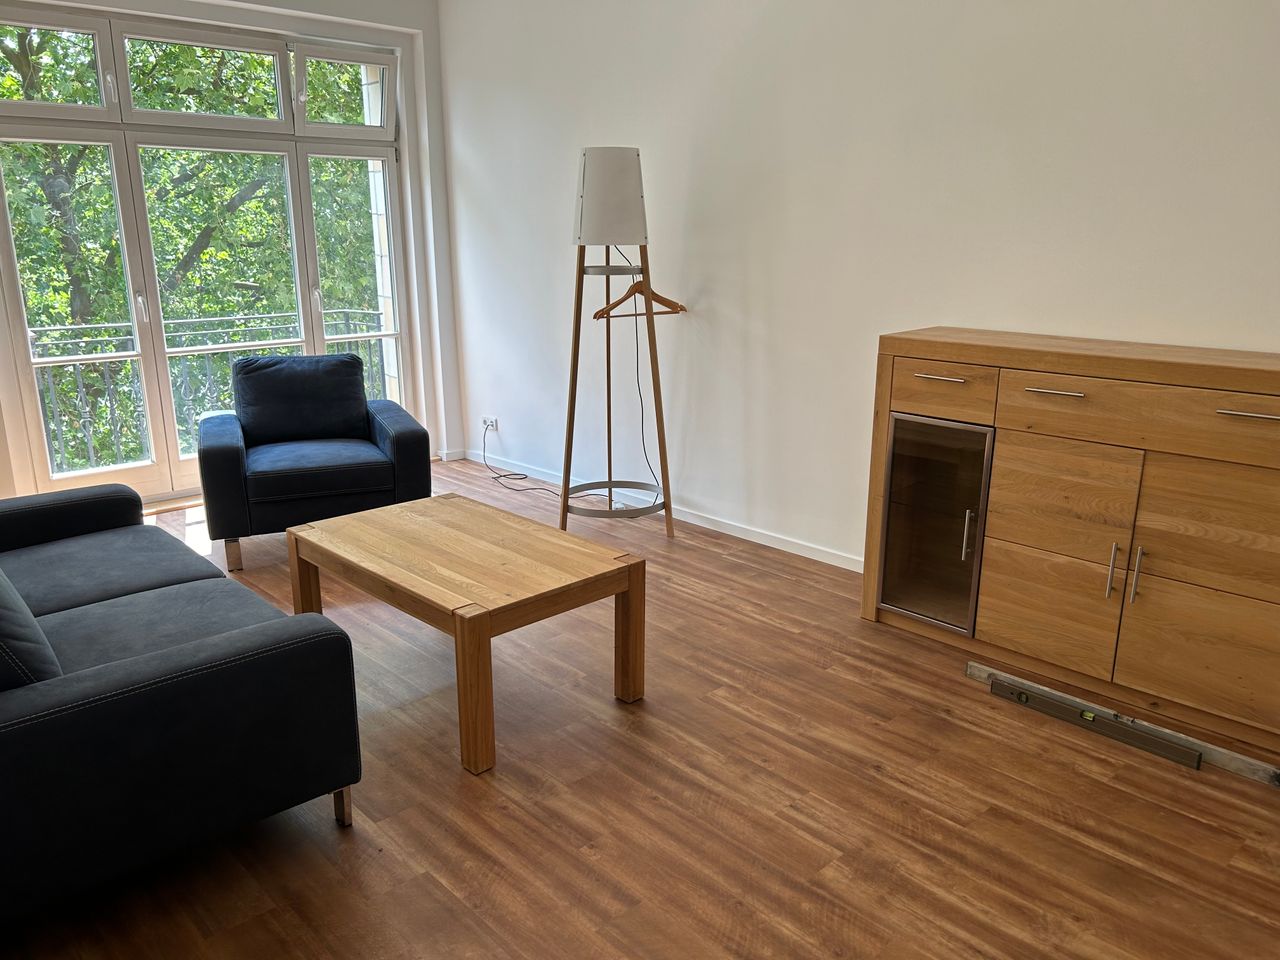 New flat in Friedrichshain